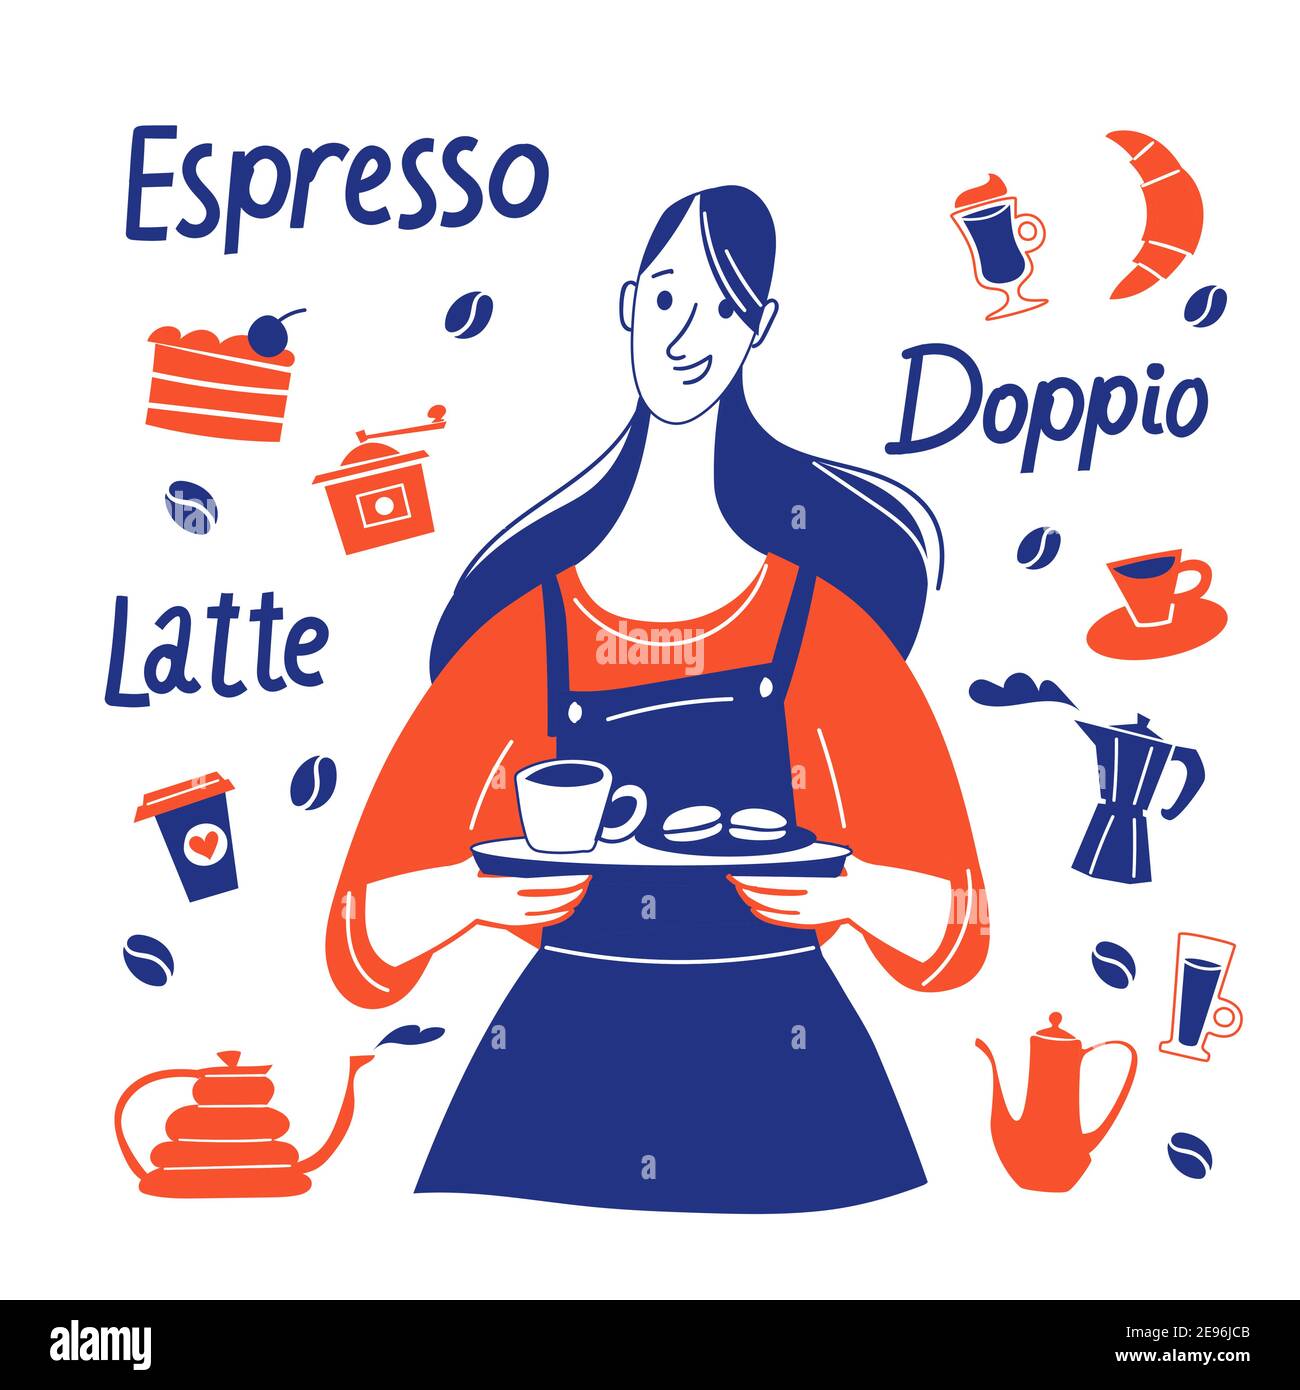 Motivierendes Espresso-Vektordesign mit Barista- und Kaffeematerial Stock Vektor